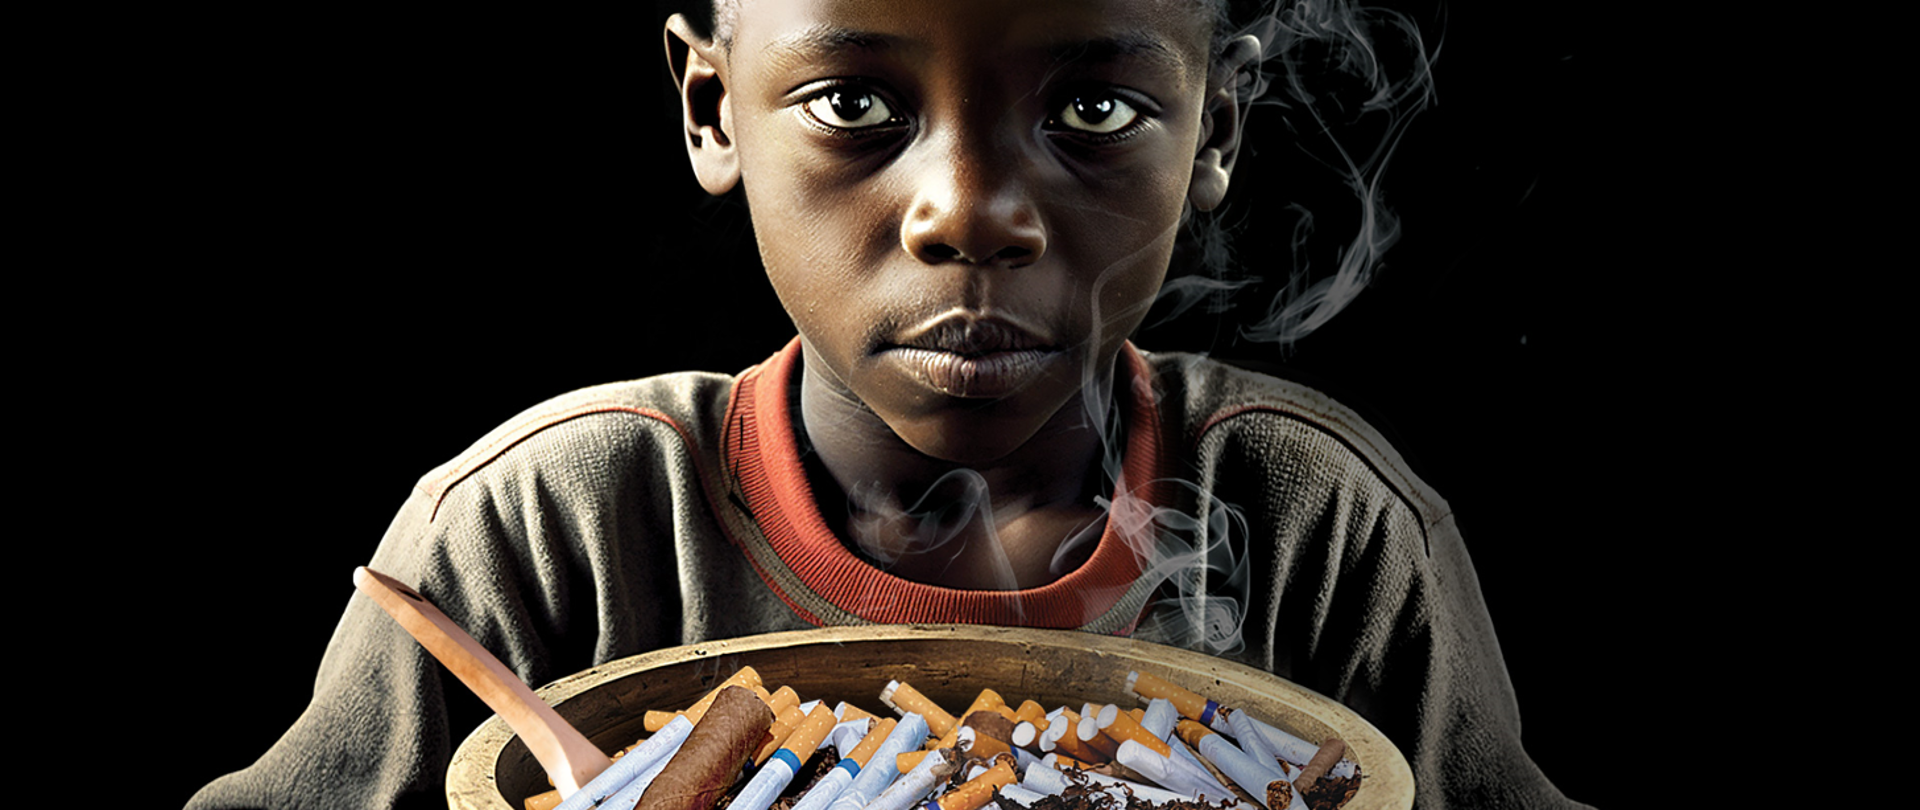 Ciemnoskóry chłopiec trzymający w rekach talerz pełny papierosów. 